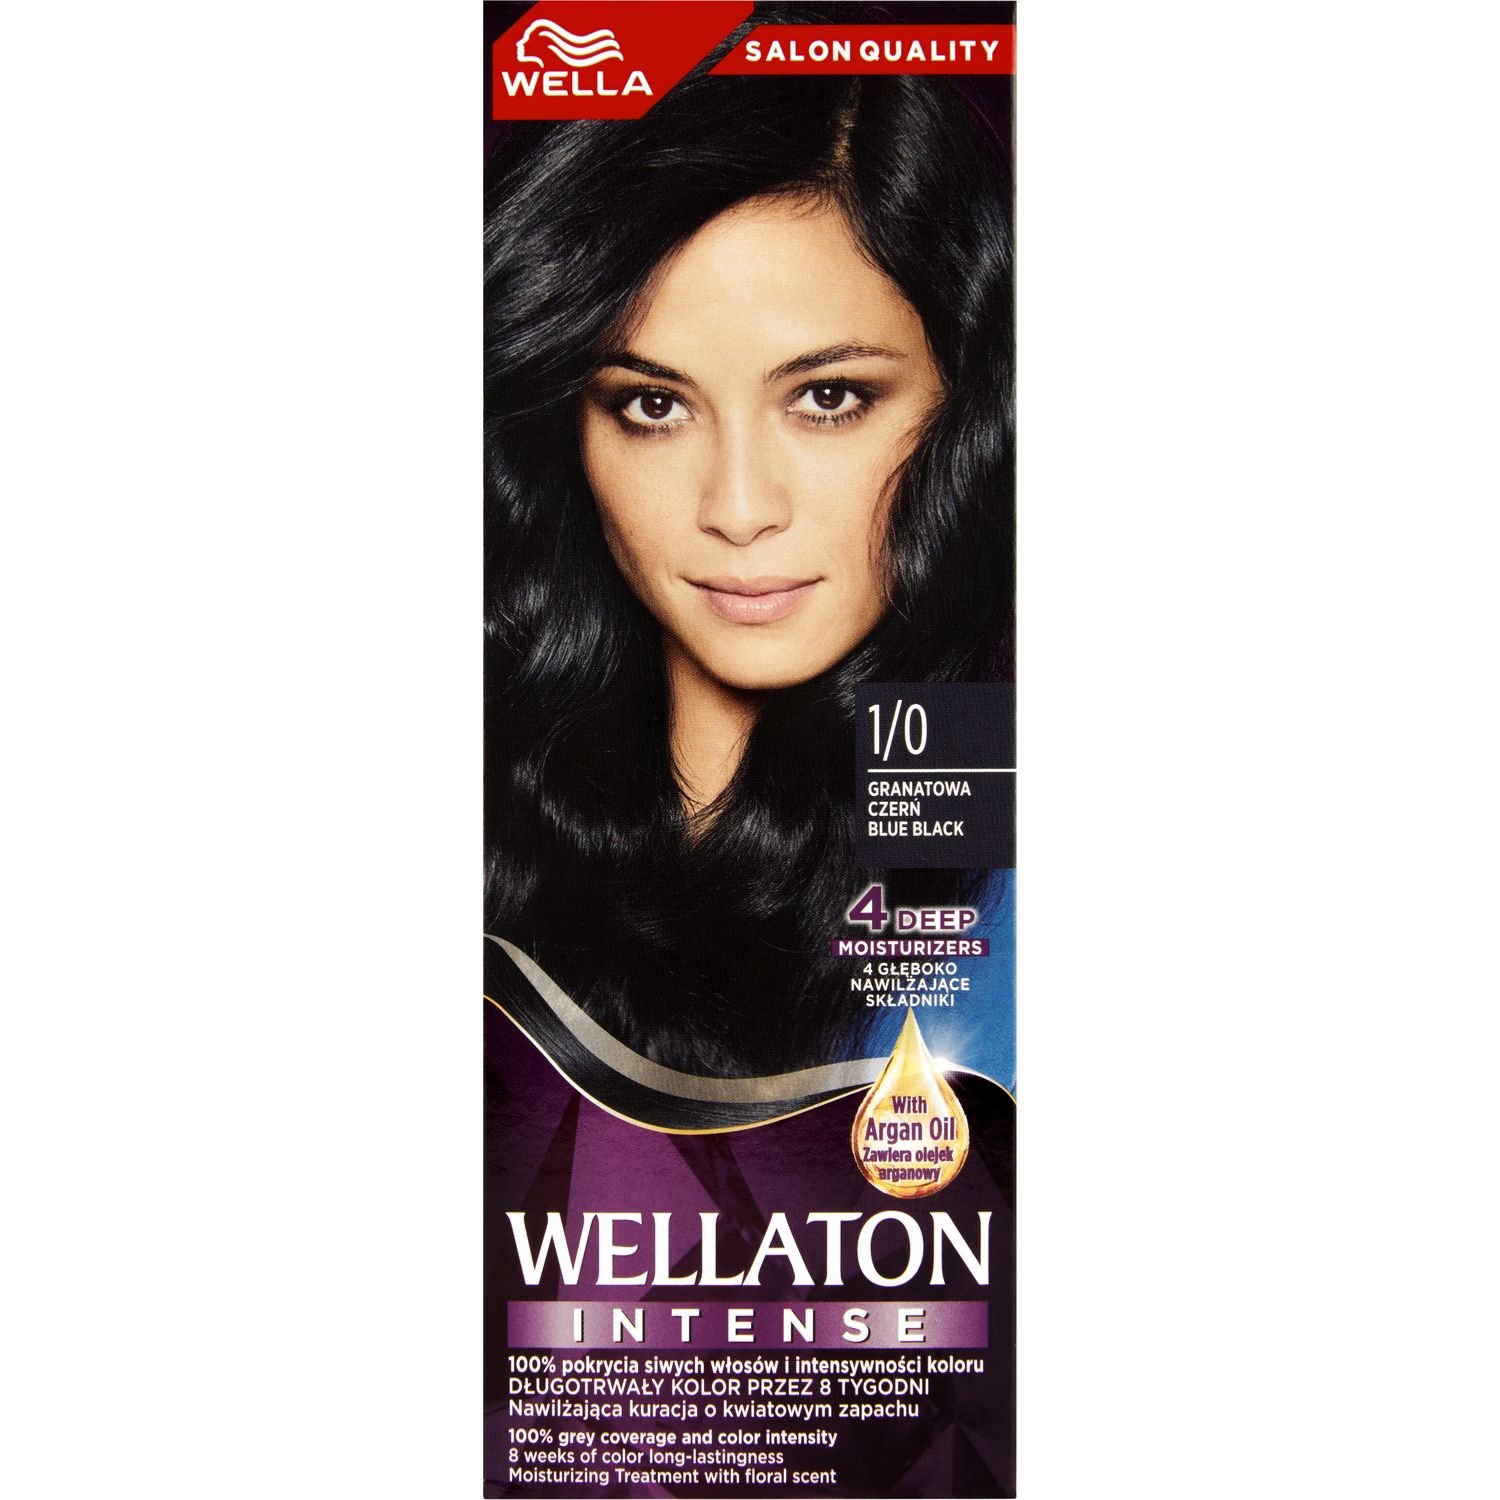 Інтенсивна крем-фарба для волосся Wellaton, відтінок 1/0 (Синяво-чорний), 110 мл - фото 2